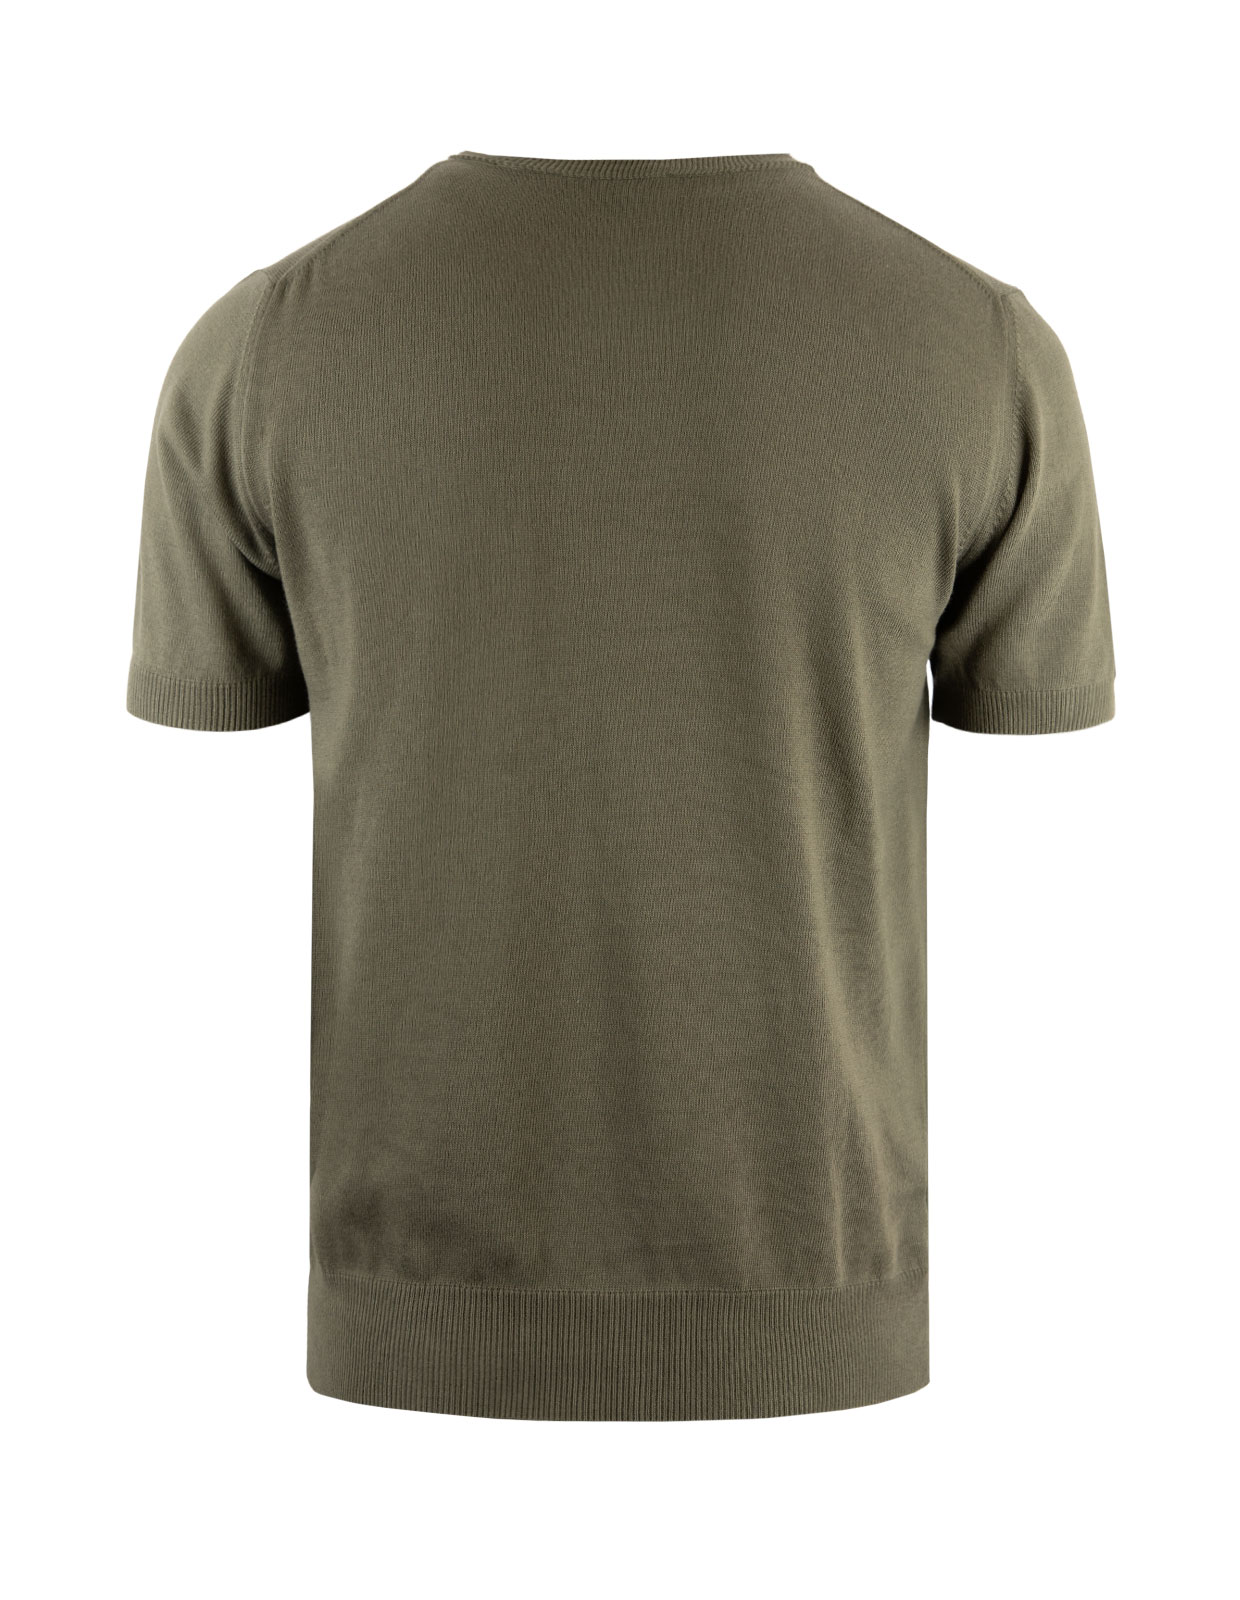 T-shirt Finstickad Bomull Militärgrön Stl L